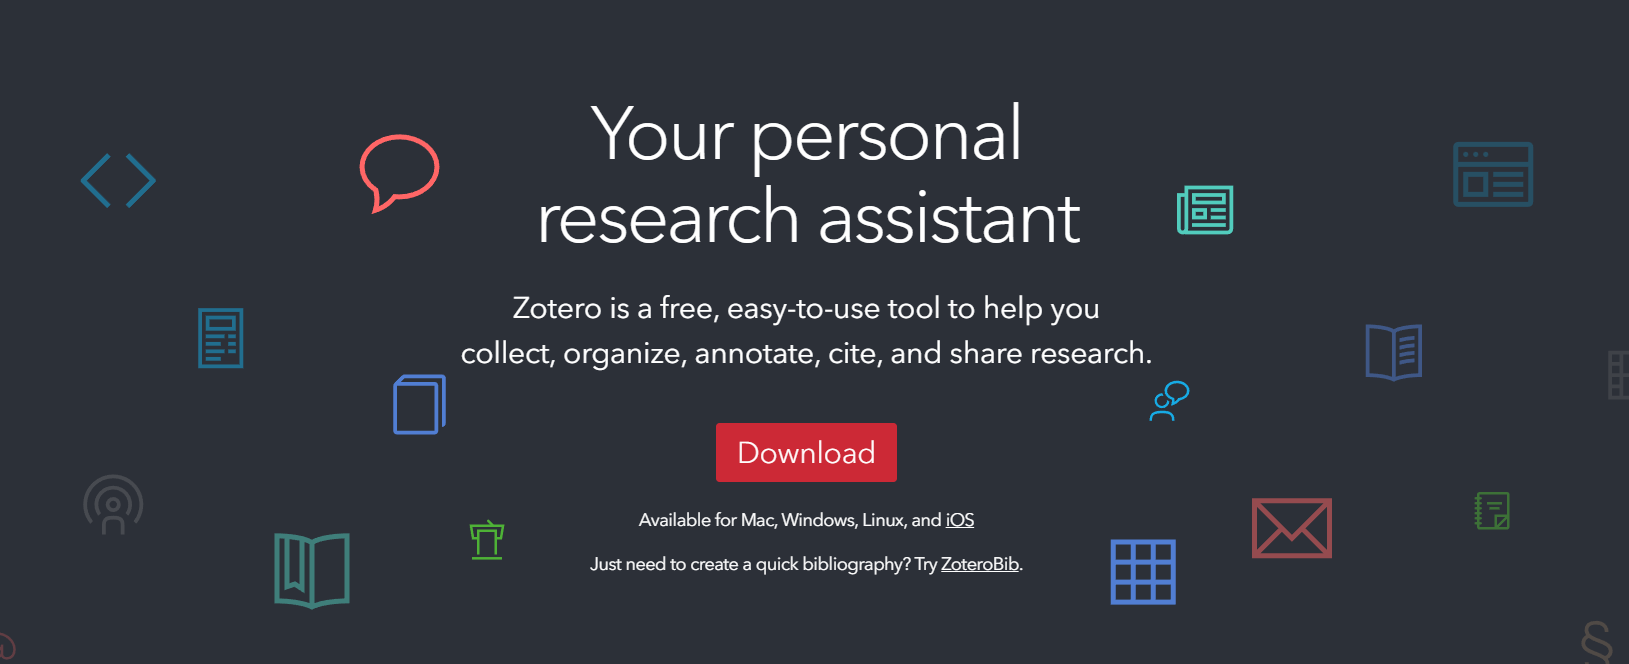  Zotero est un logiciel de gestion de références open source et gratuit, conçu pour aider les chercheurs à collecter, organiser, citer et partager leurs sources de recherche. Il permet également de générer automatiquement des bibliographies dans différents styles de citation. Zotero est disponible en tant qu'extension pour les navigateurs web et en tant qu'application de bureau pour Windows, Mac et Linux. Il est largement utilisé dans les milieux universitaires 